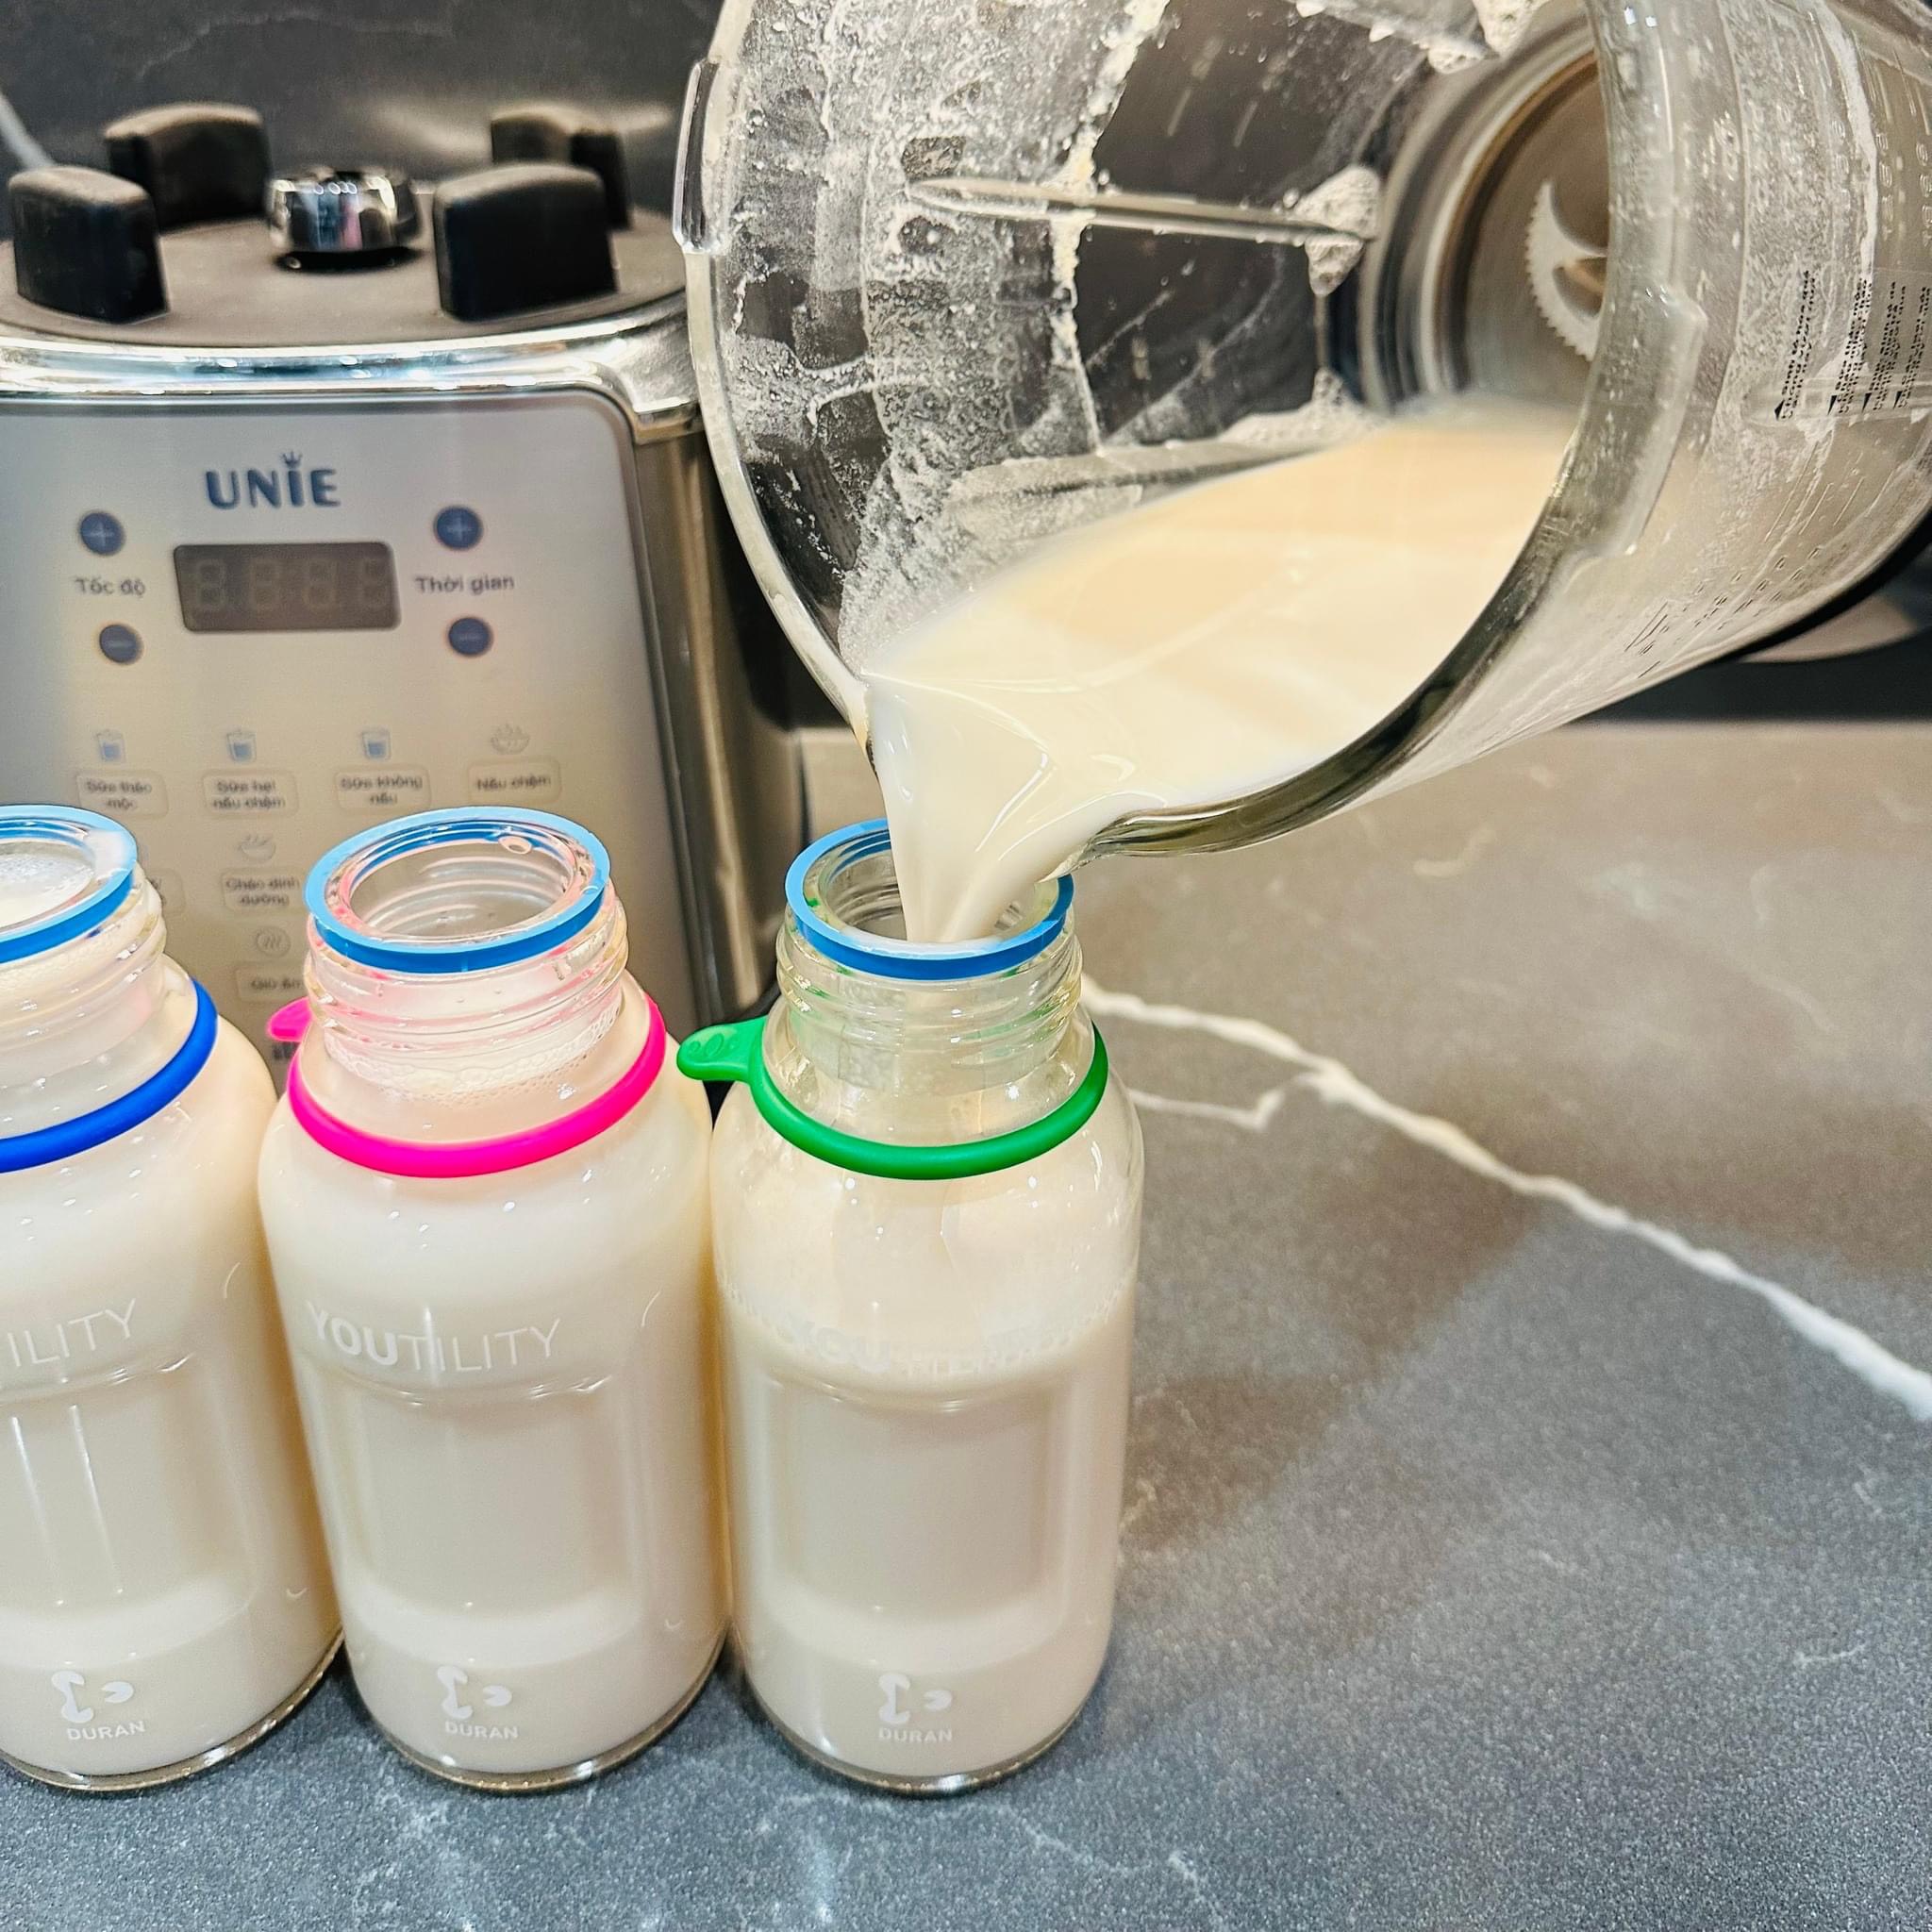 Những ưu điểm và nhược điểm quan trọng mà bạn nên biết của máy làm sữa hạt 6